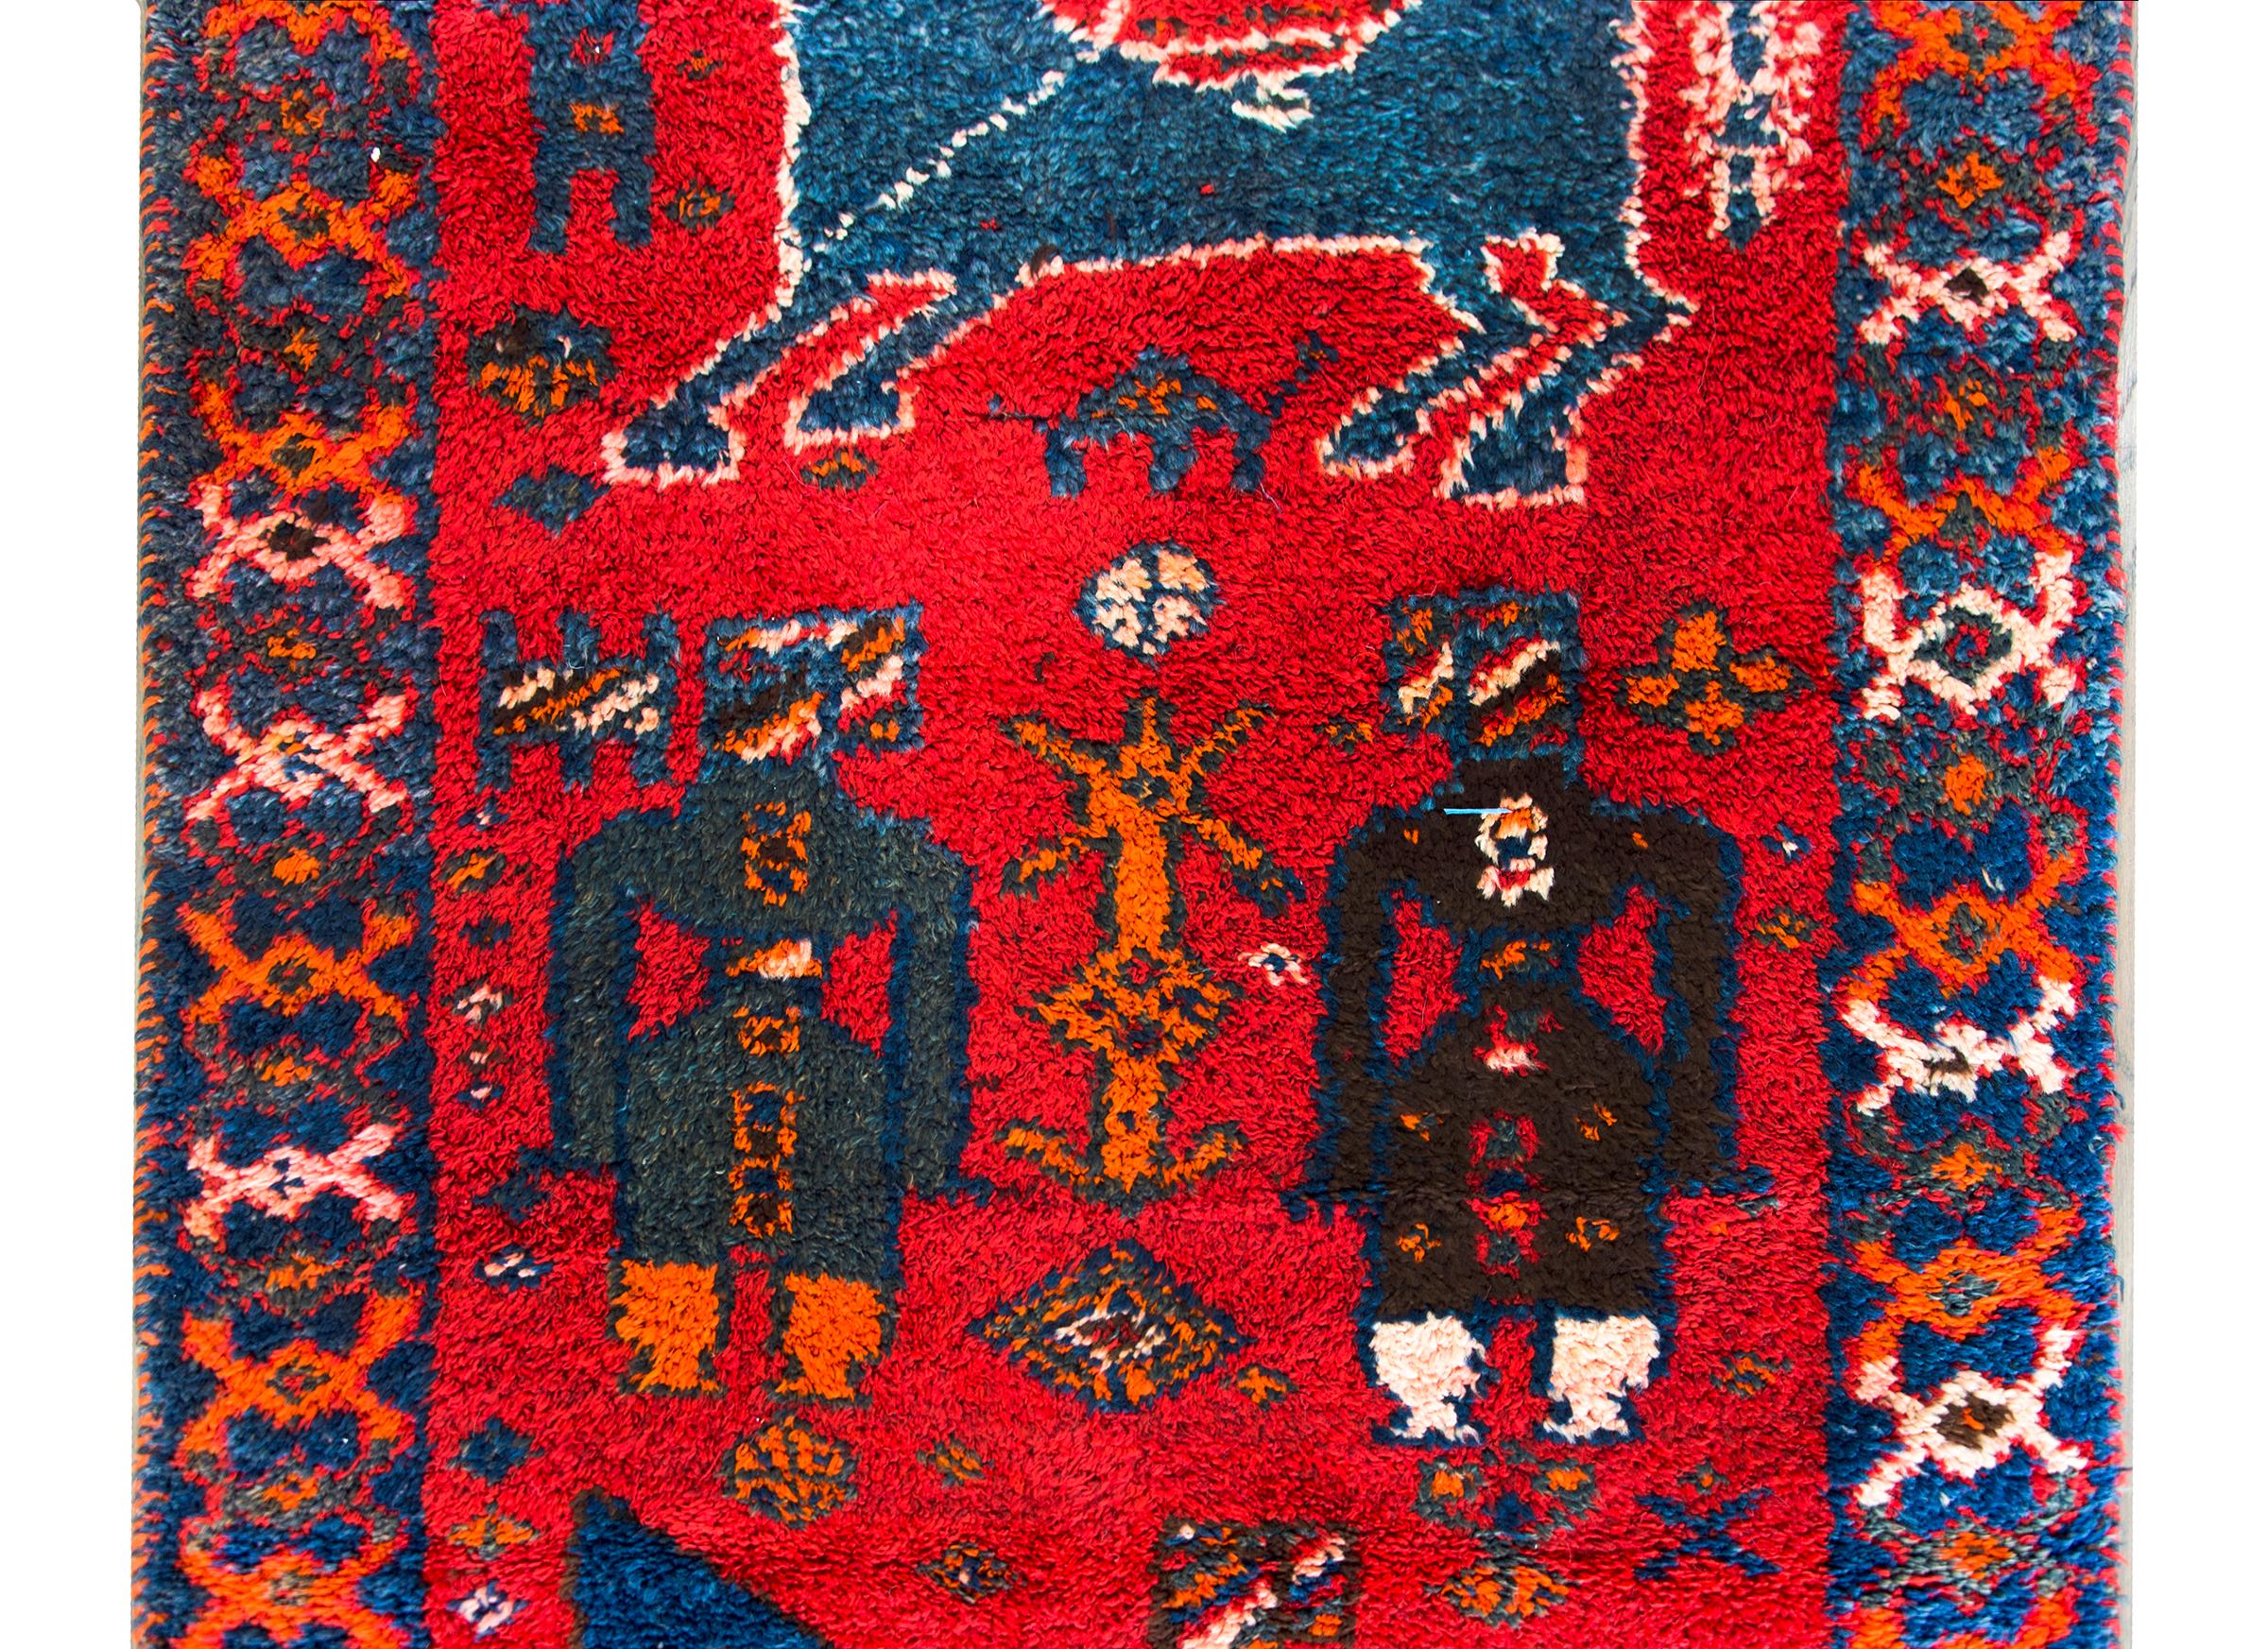 Un audacieux tapis turc Oushak du milieu du 20e siècle avec un motif inhabituel contenant des personnages debout et deux personnages à cheval, tous tissés dans de brillants coloris indigos, turquoise, orange et blanc sur un fond cramoisi, et